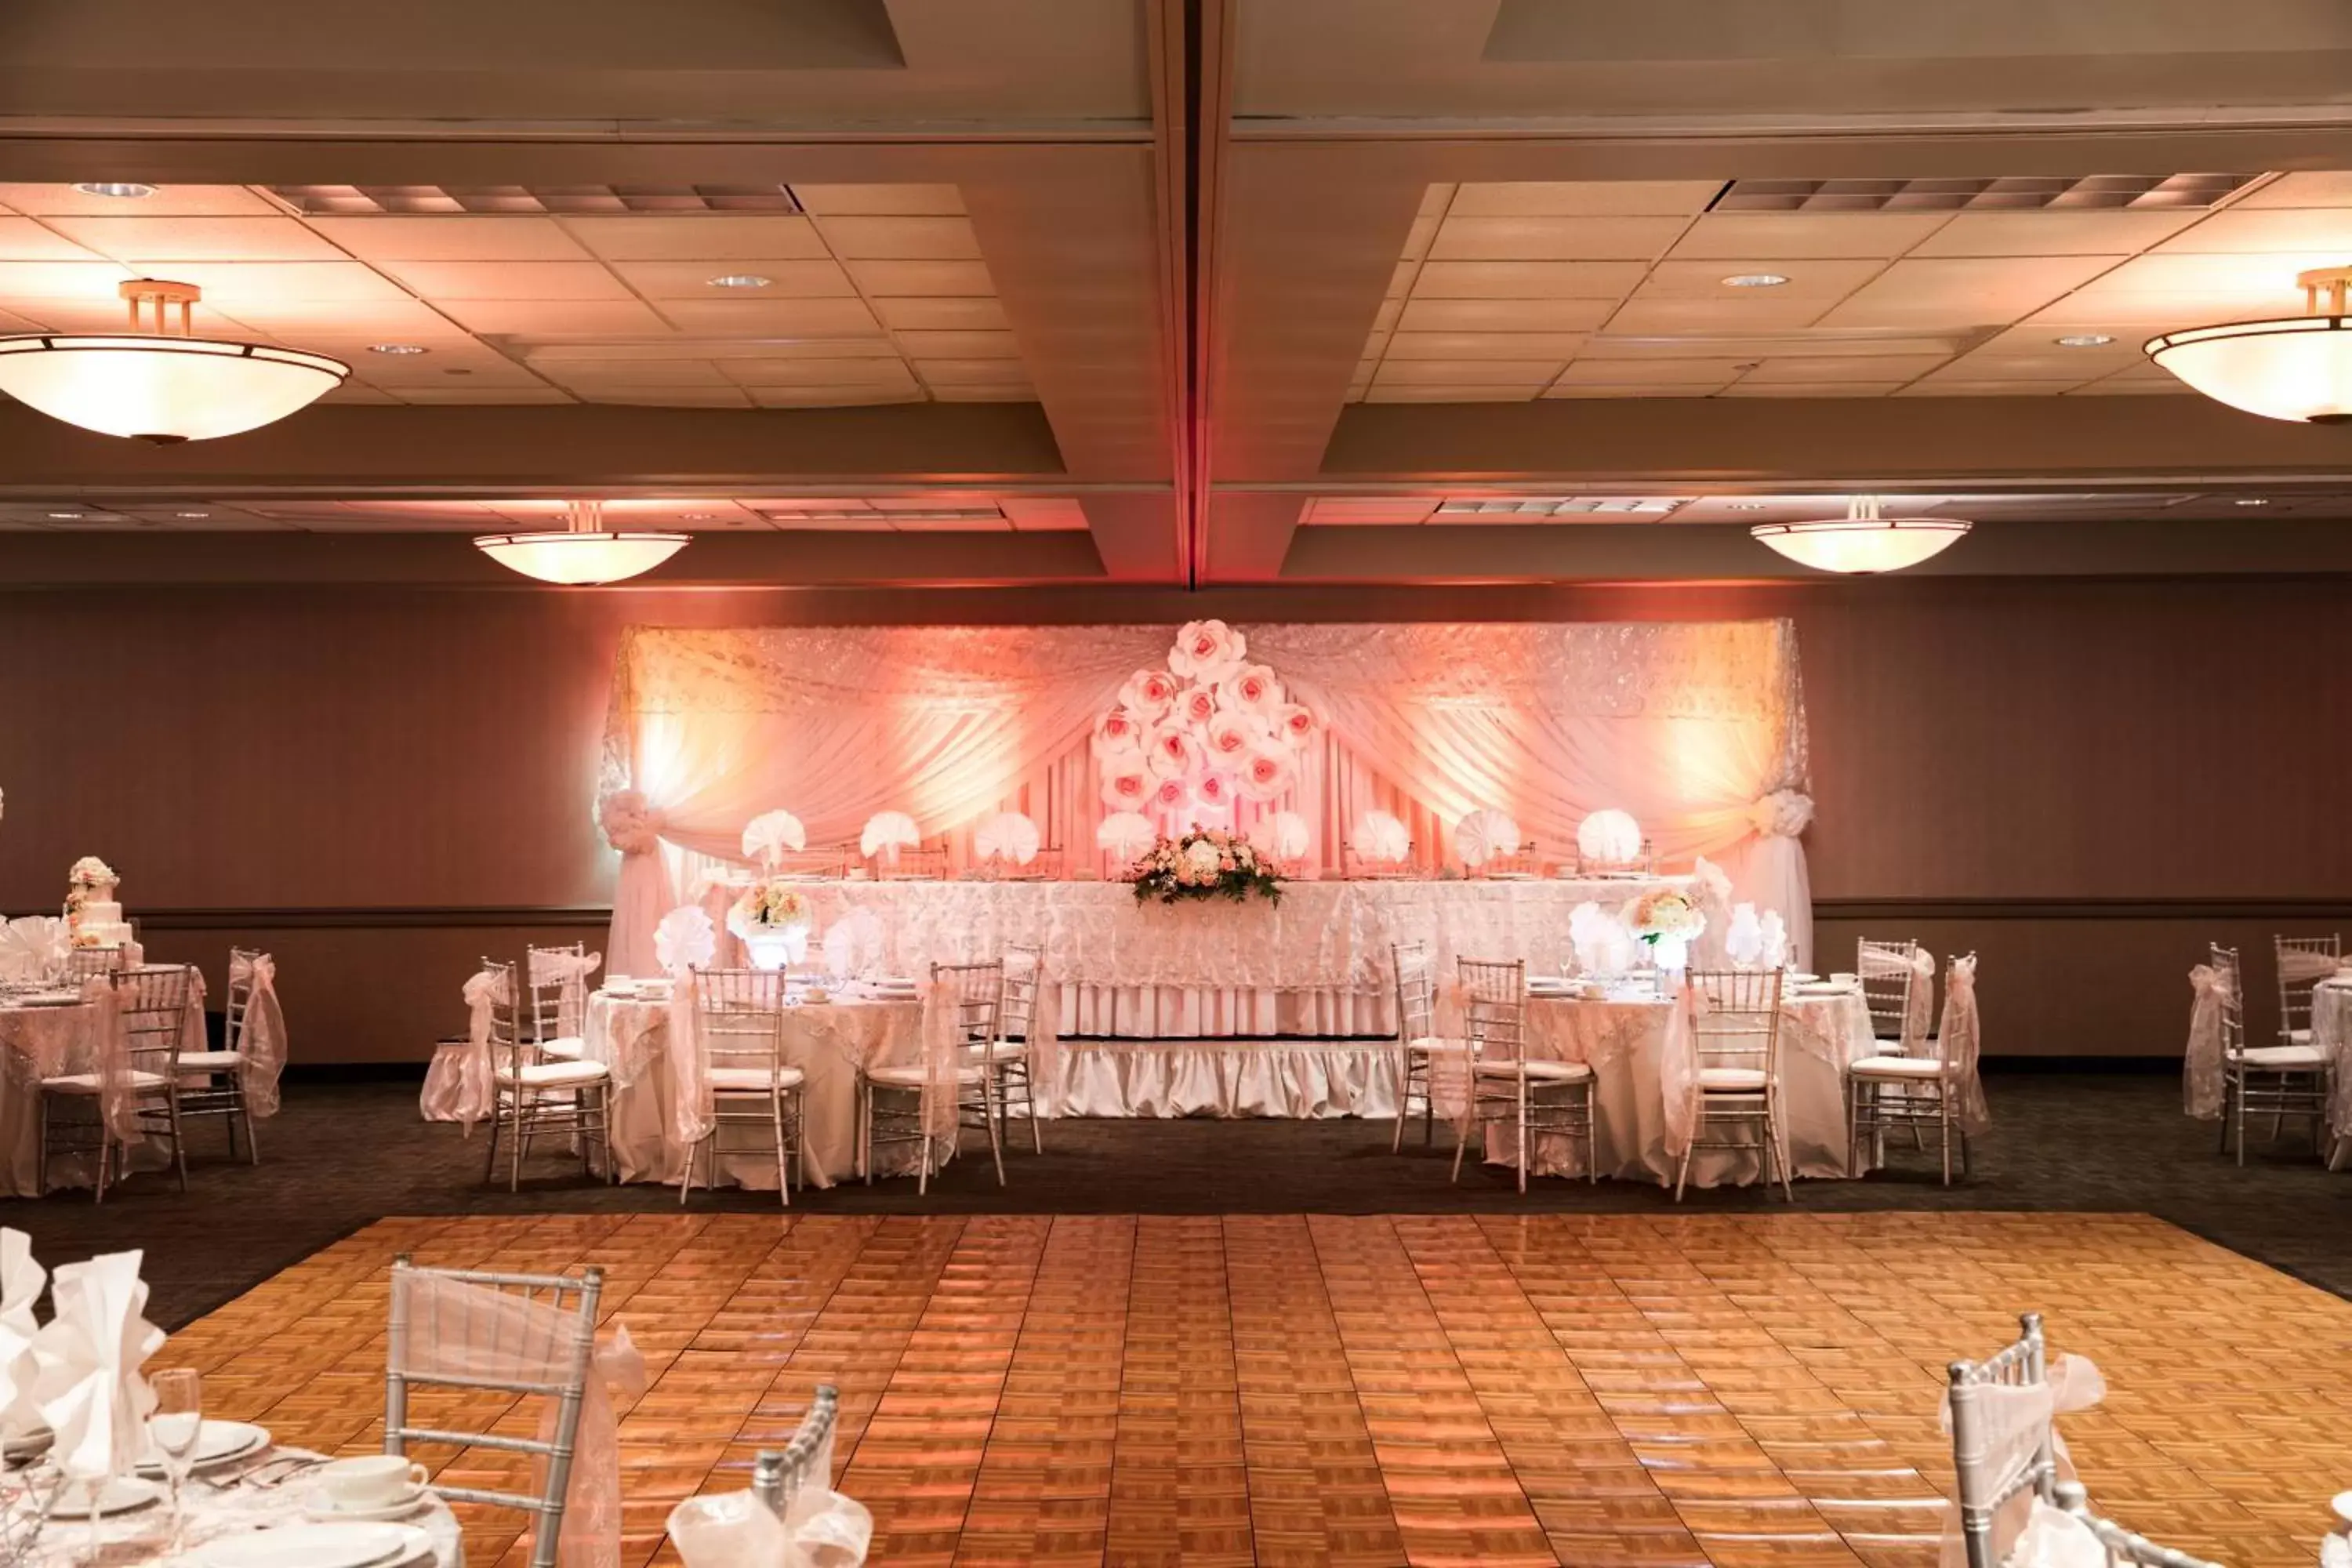 Banquet/Function facilities, Banquet Facilities in Clarion Hotel Concord Walnut Creek